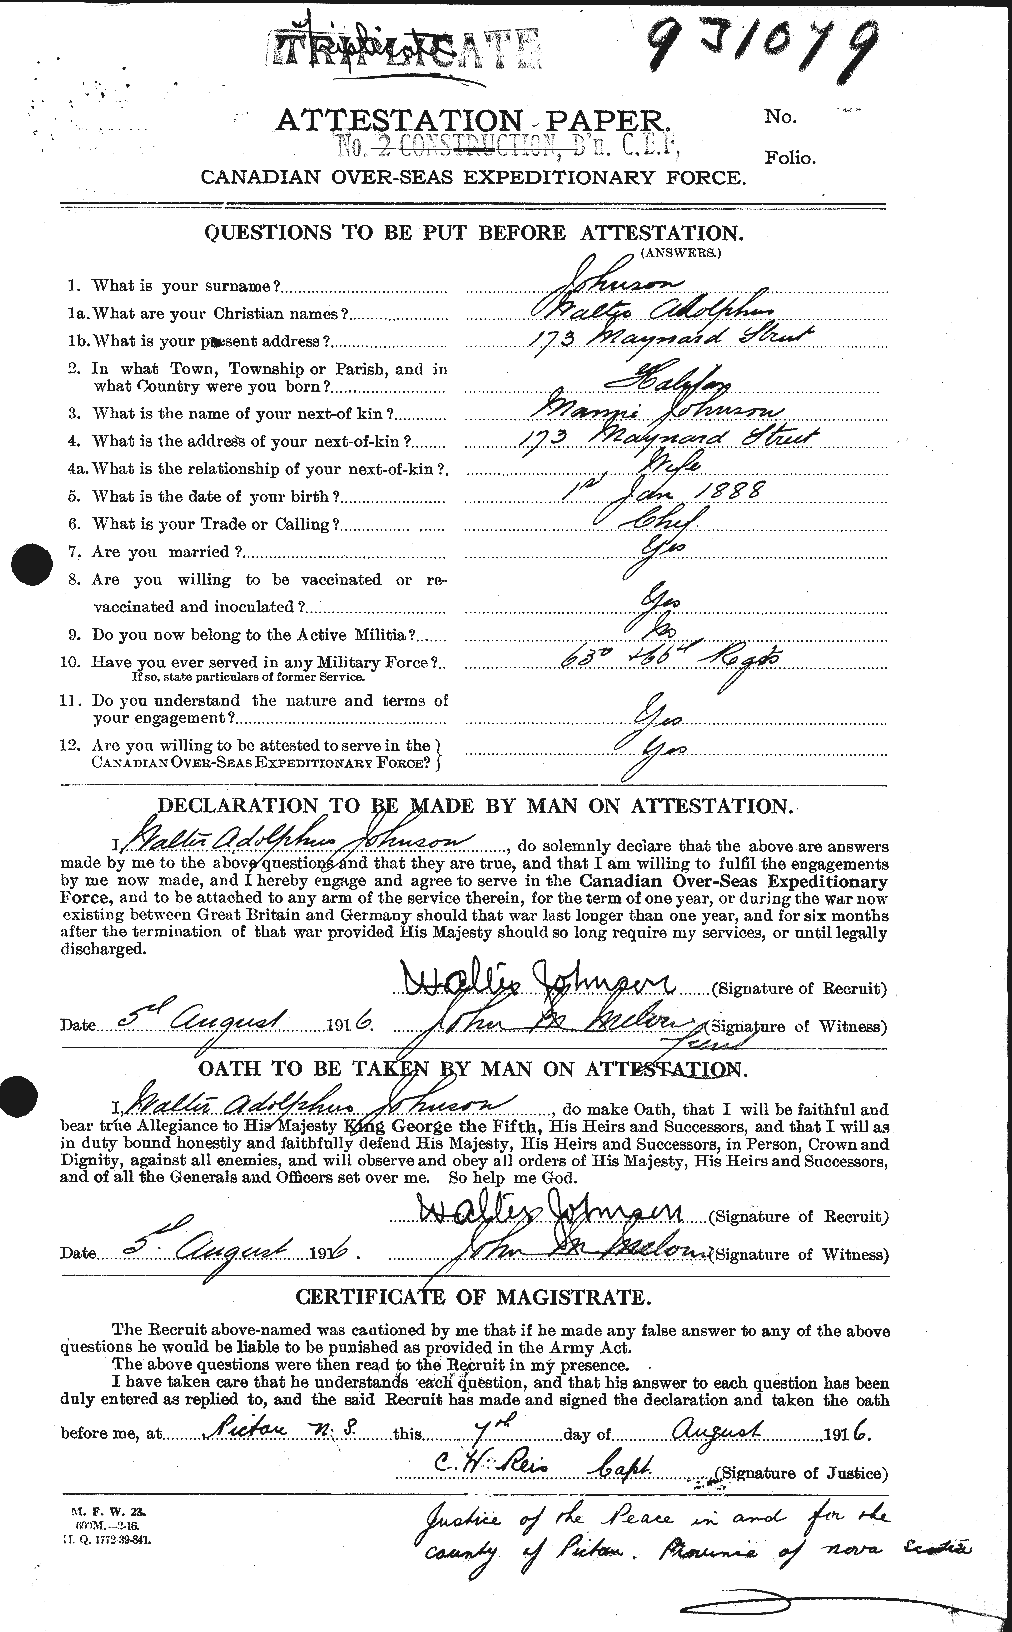 Dossiers du Personnel de la Première Guerre mondiale - CEC 417602a